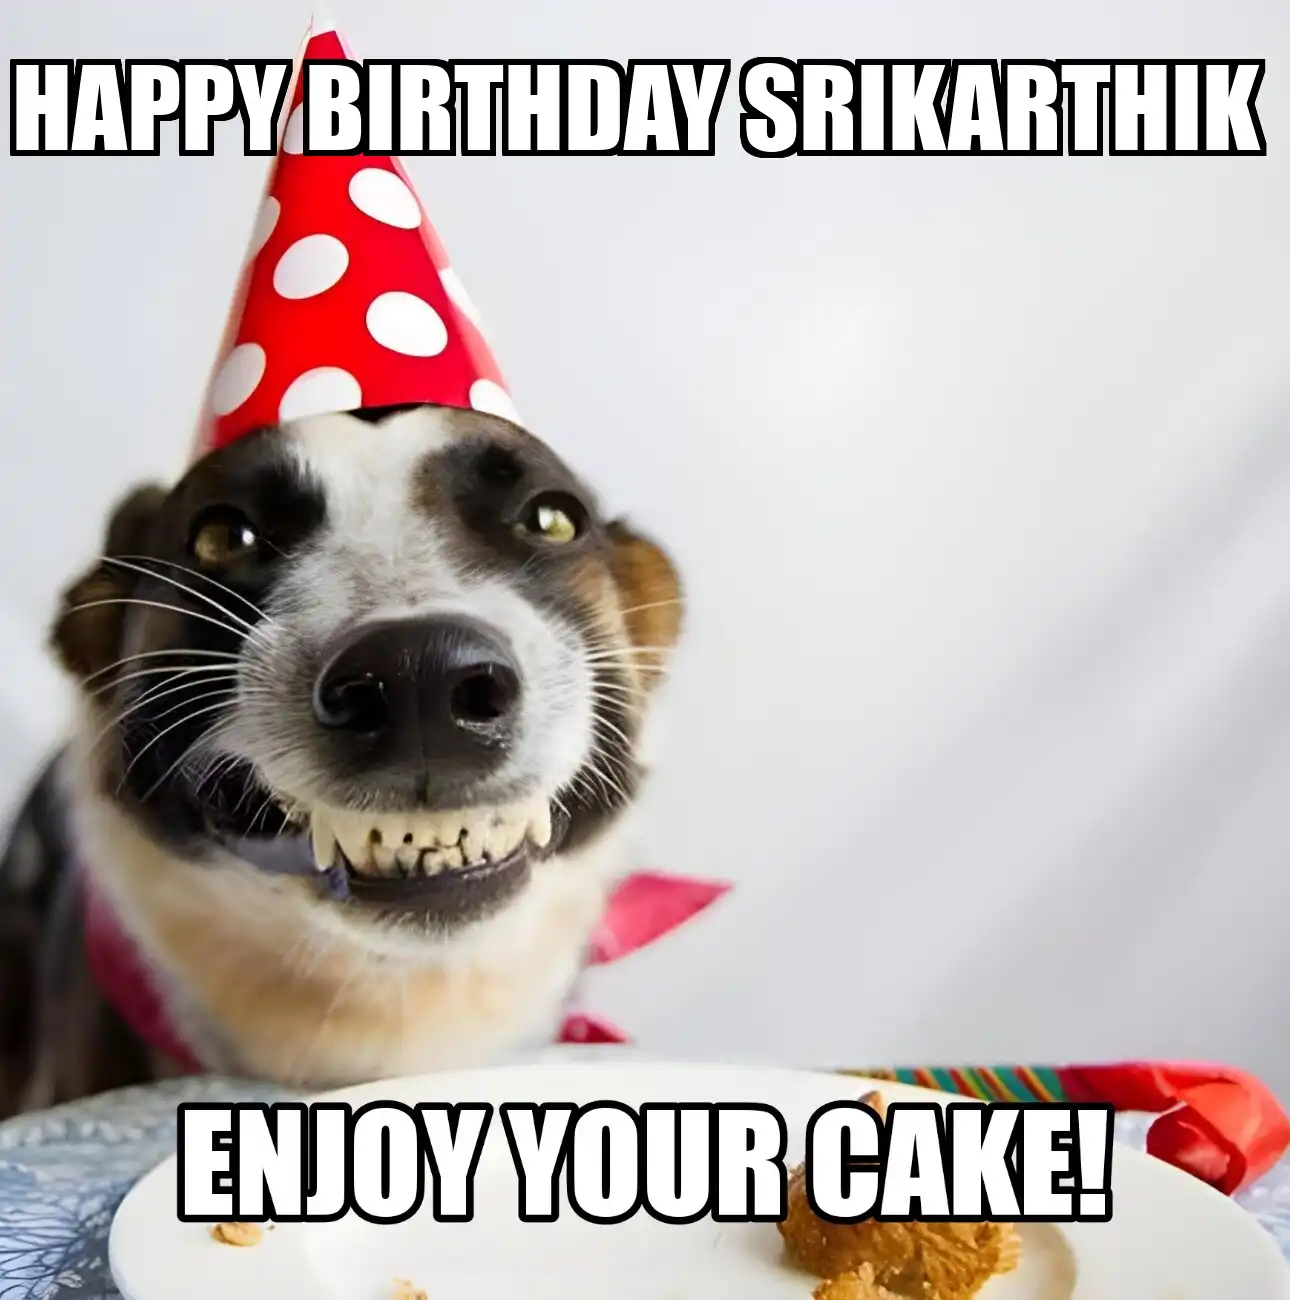 Happy Birthday Srikarthik Enjoy Your Cake Dog Meme